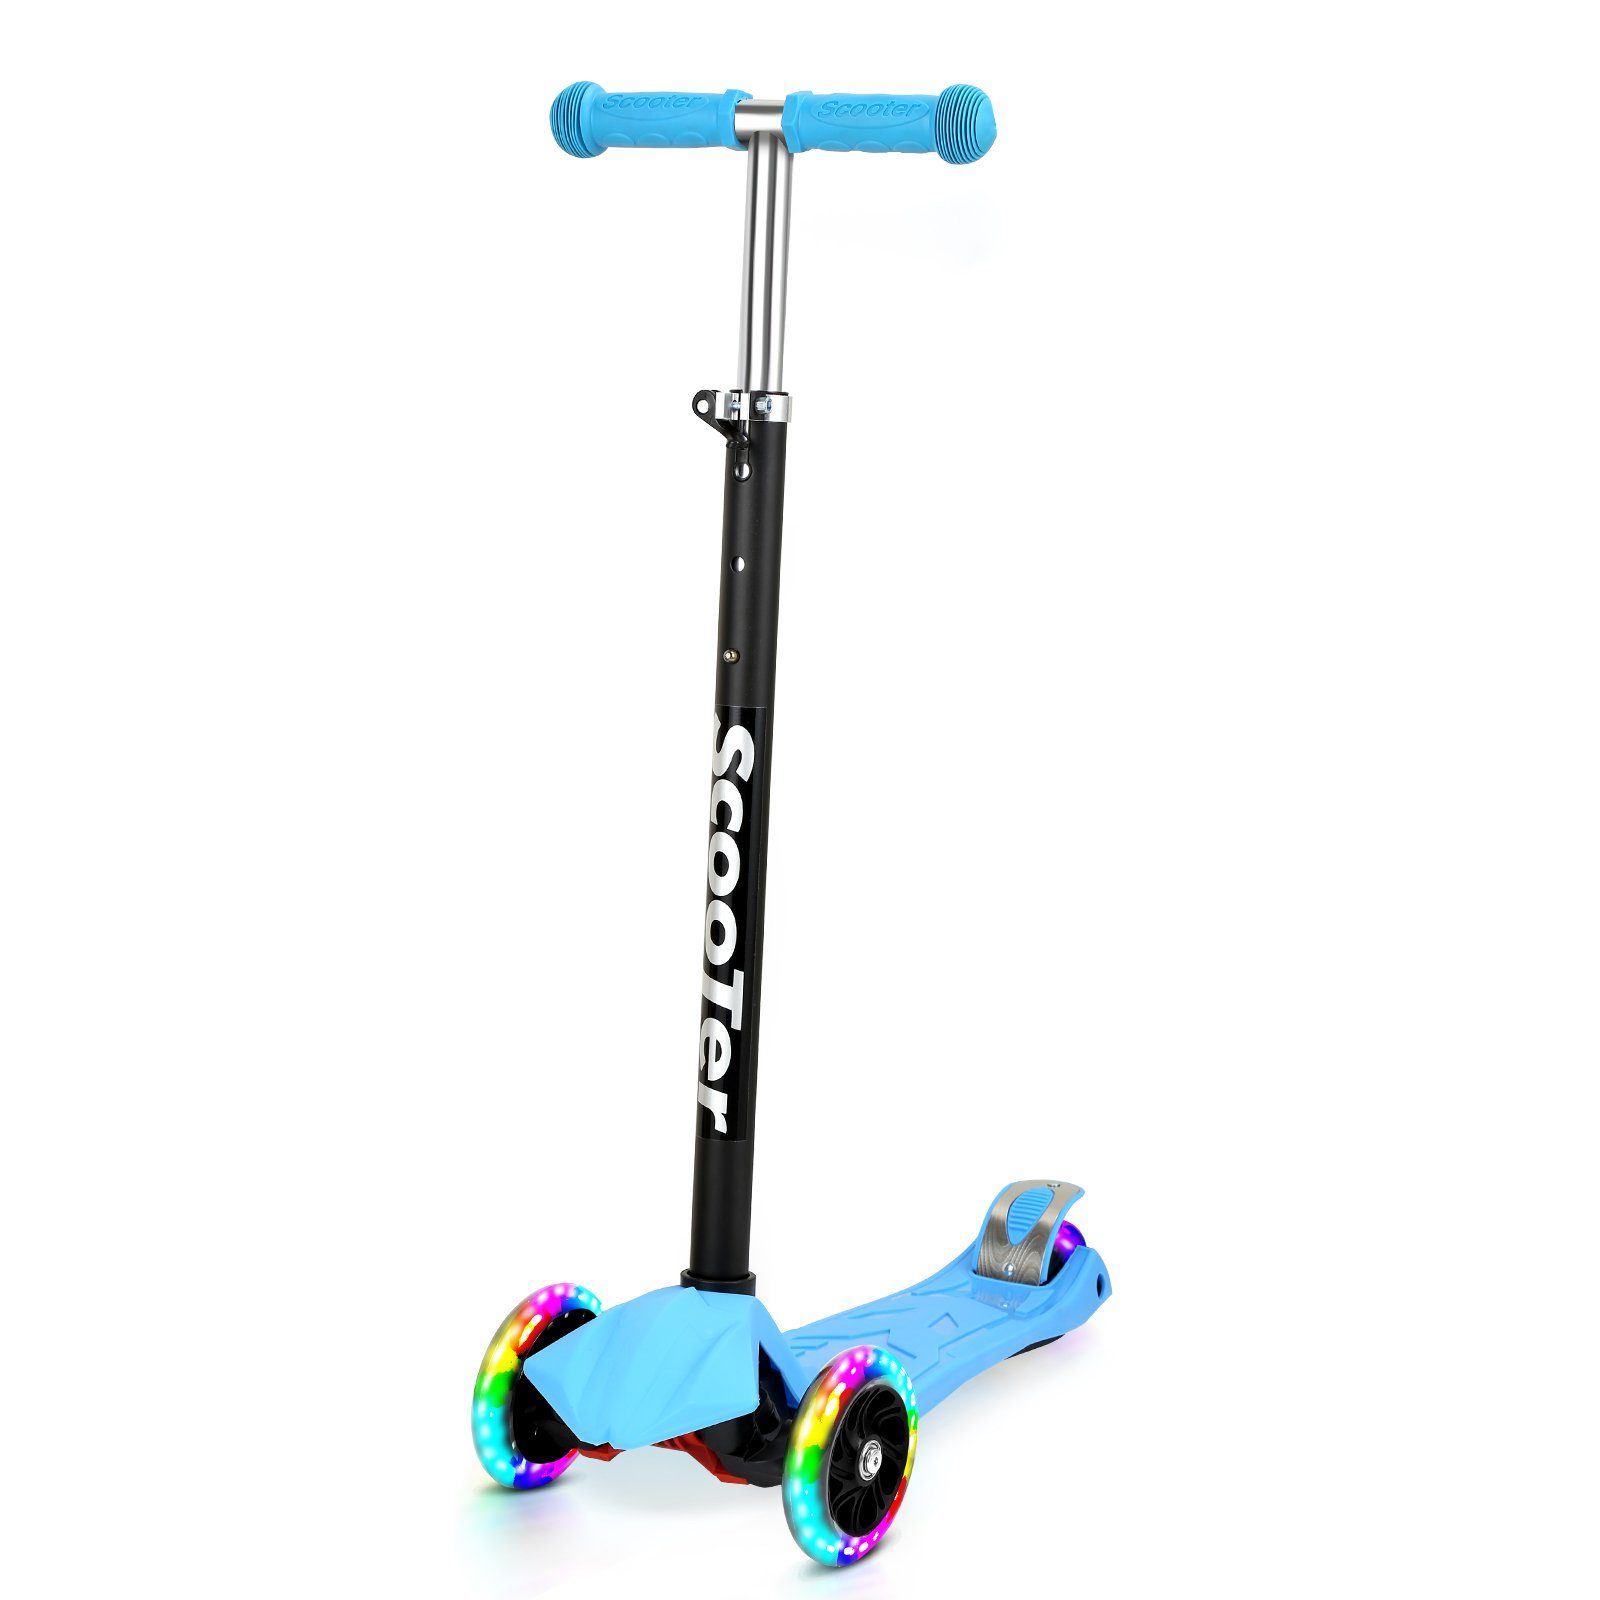 Gimisgu Scooter Räder Blau Cityroller Tretroller Höhenverstellbar LED Kinderroller